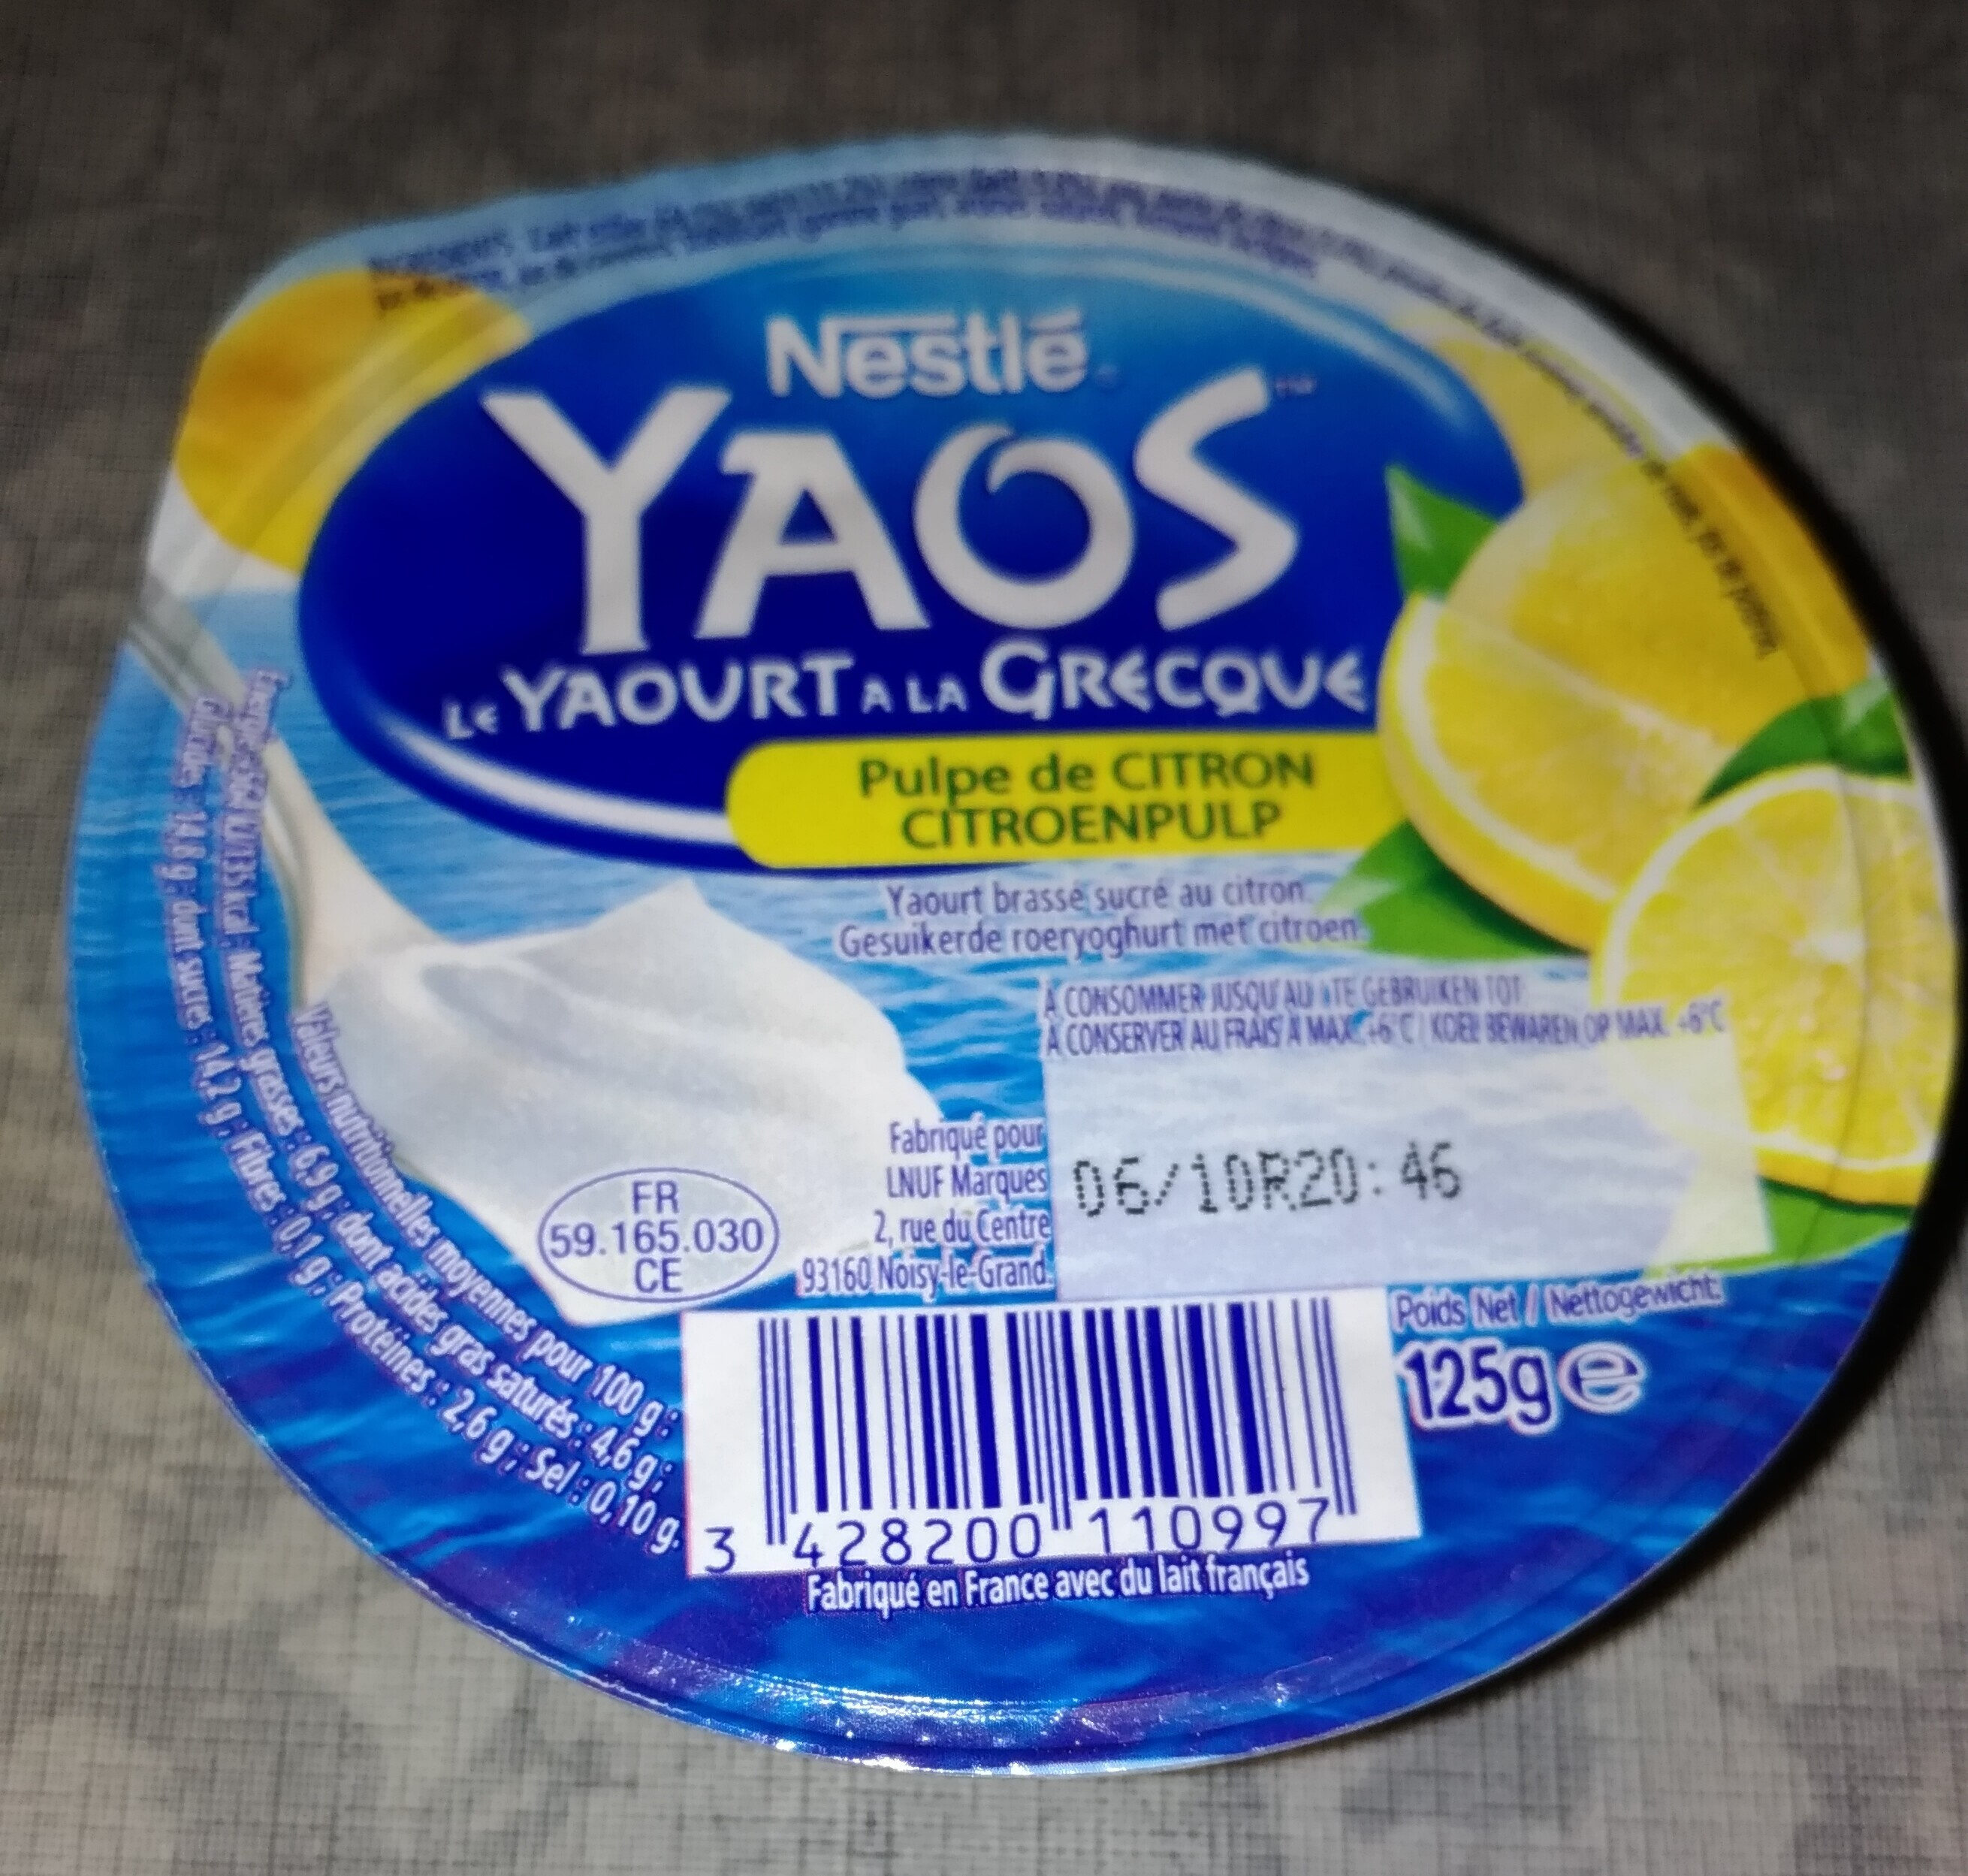 Yaos - Le yaourt à la Grecque pulpe de citron - Product - fr